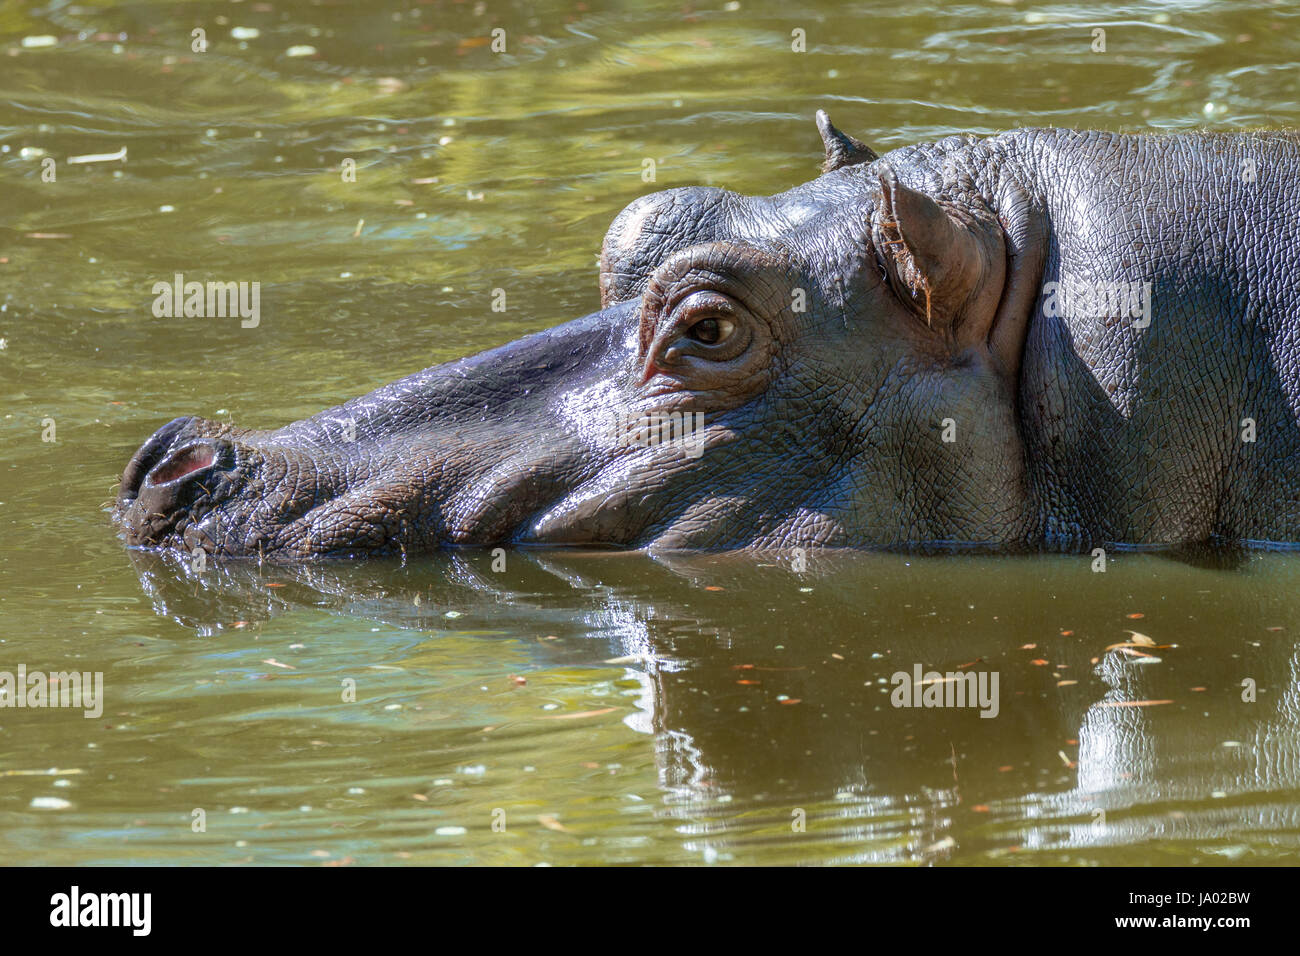 Bild von einem großen Säugetiere eines wilden Tieres, Nilpferd im Wasser Stockfoto